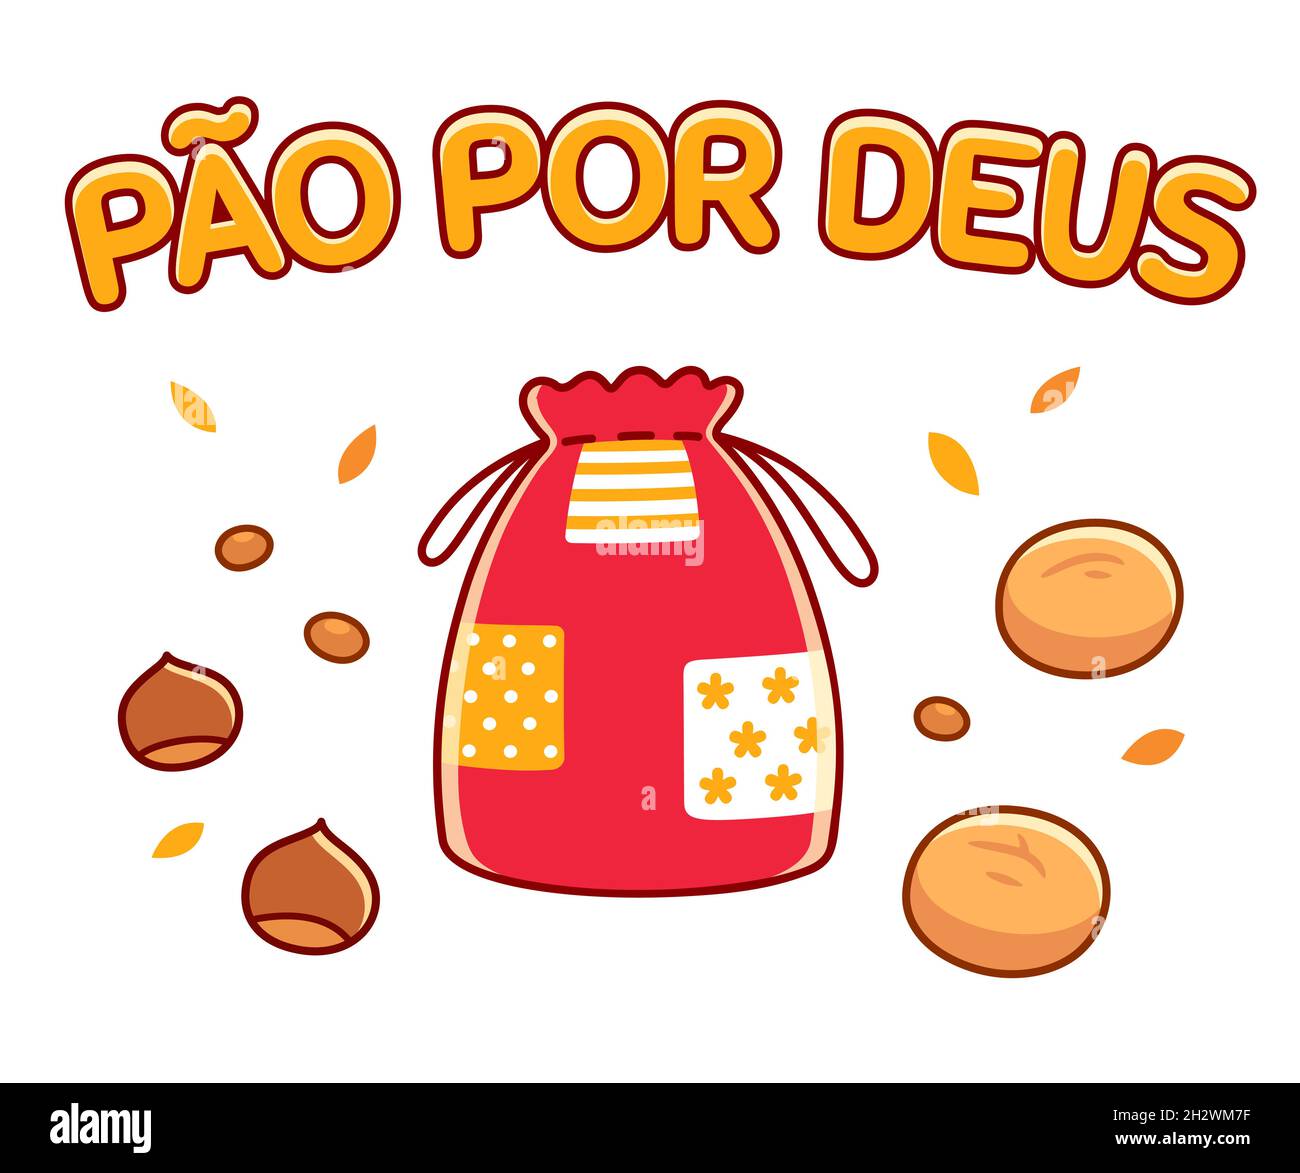 Pão-por-Deus (le portugais du pain pour Dieu) la tradition de la Toussaint au Portugal.Sac en tissu, broches (gâteaux), noix et châtaignes.Illustrateur de vecteur de dessin animé Illustration de Vecteur